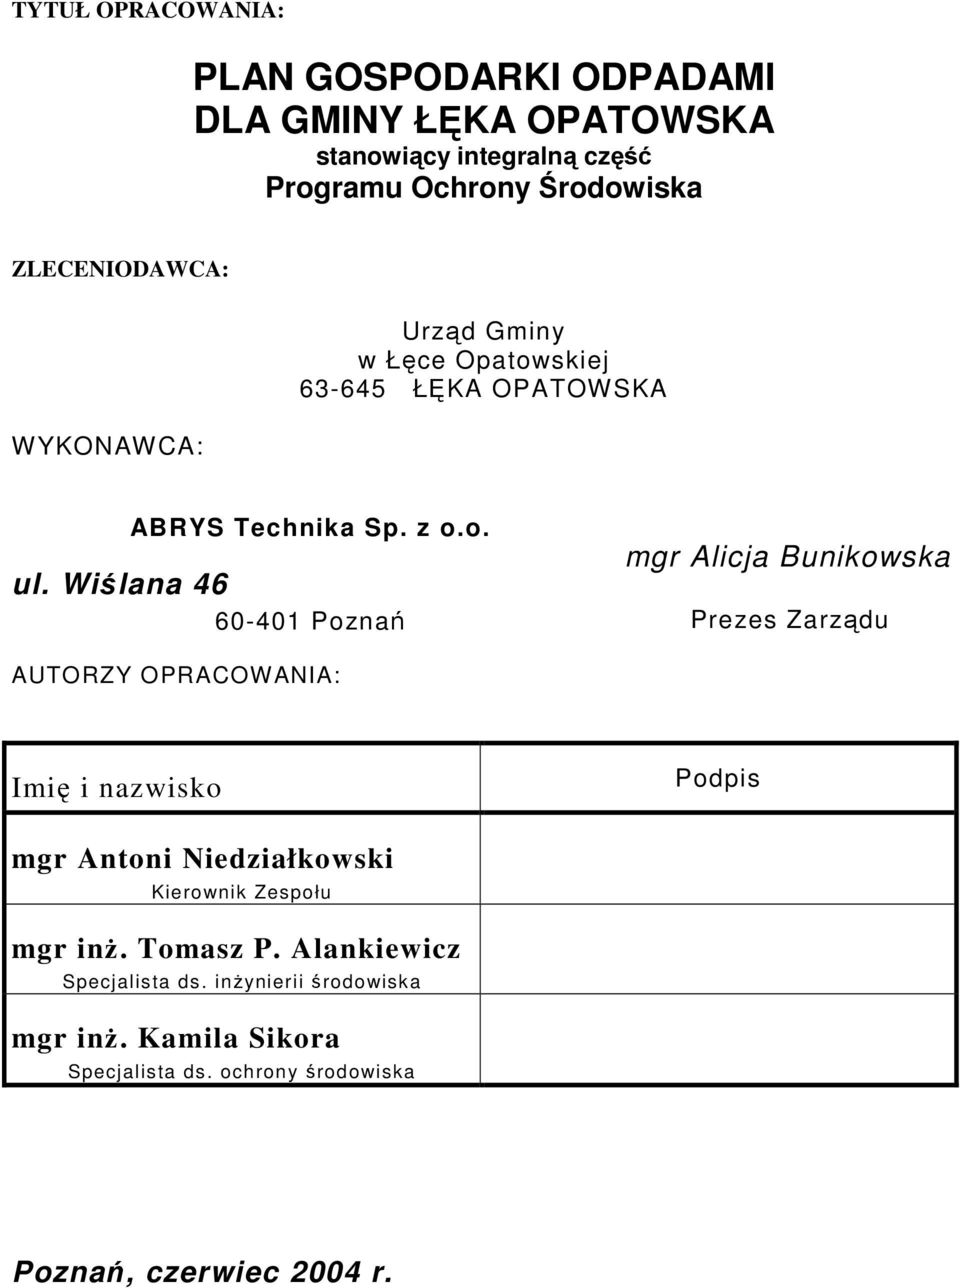 Wiślana 46 60-401 Poznań mgr Alicja Bunikowska Prezes Zarządu AUTORZY OPRACOWANIA: Imię i nazwisko Podpis mgr Antoni Niedziałkowski